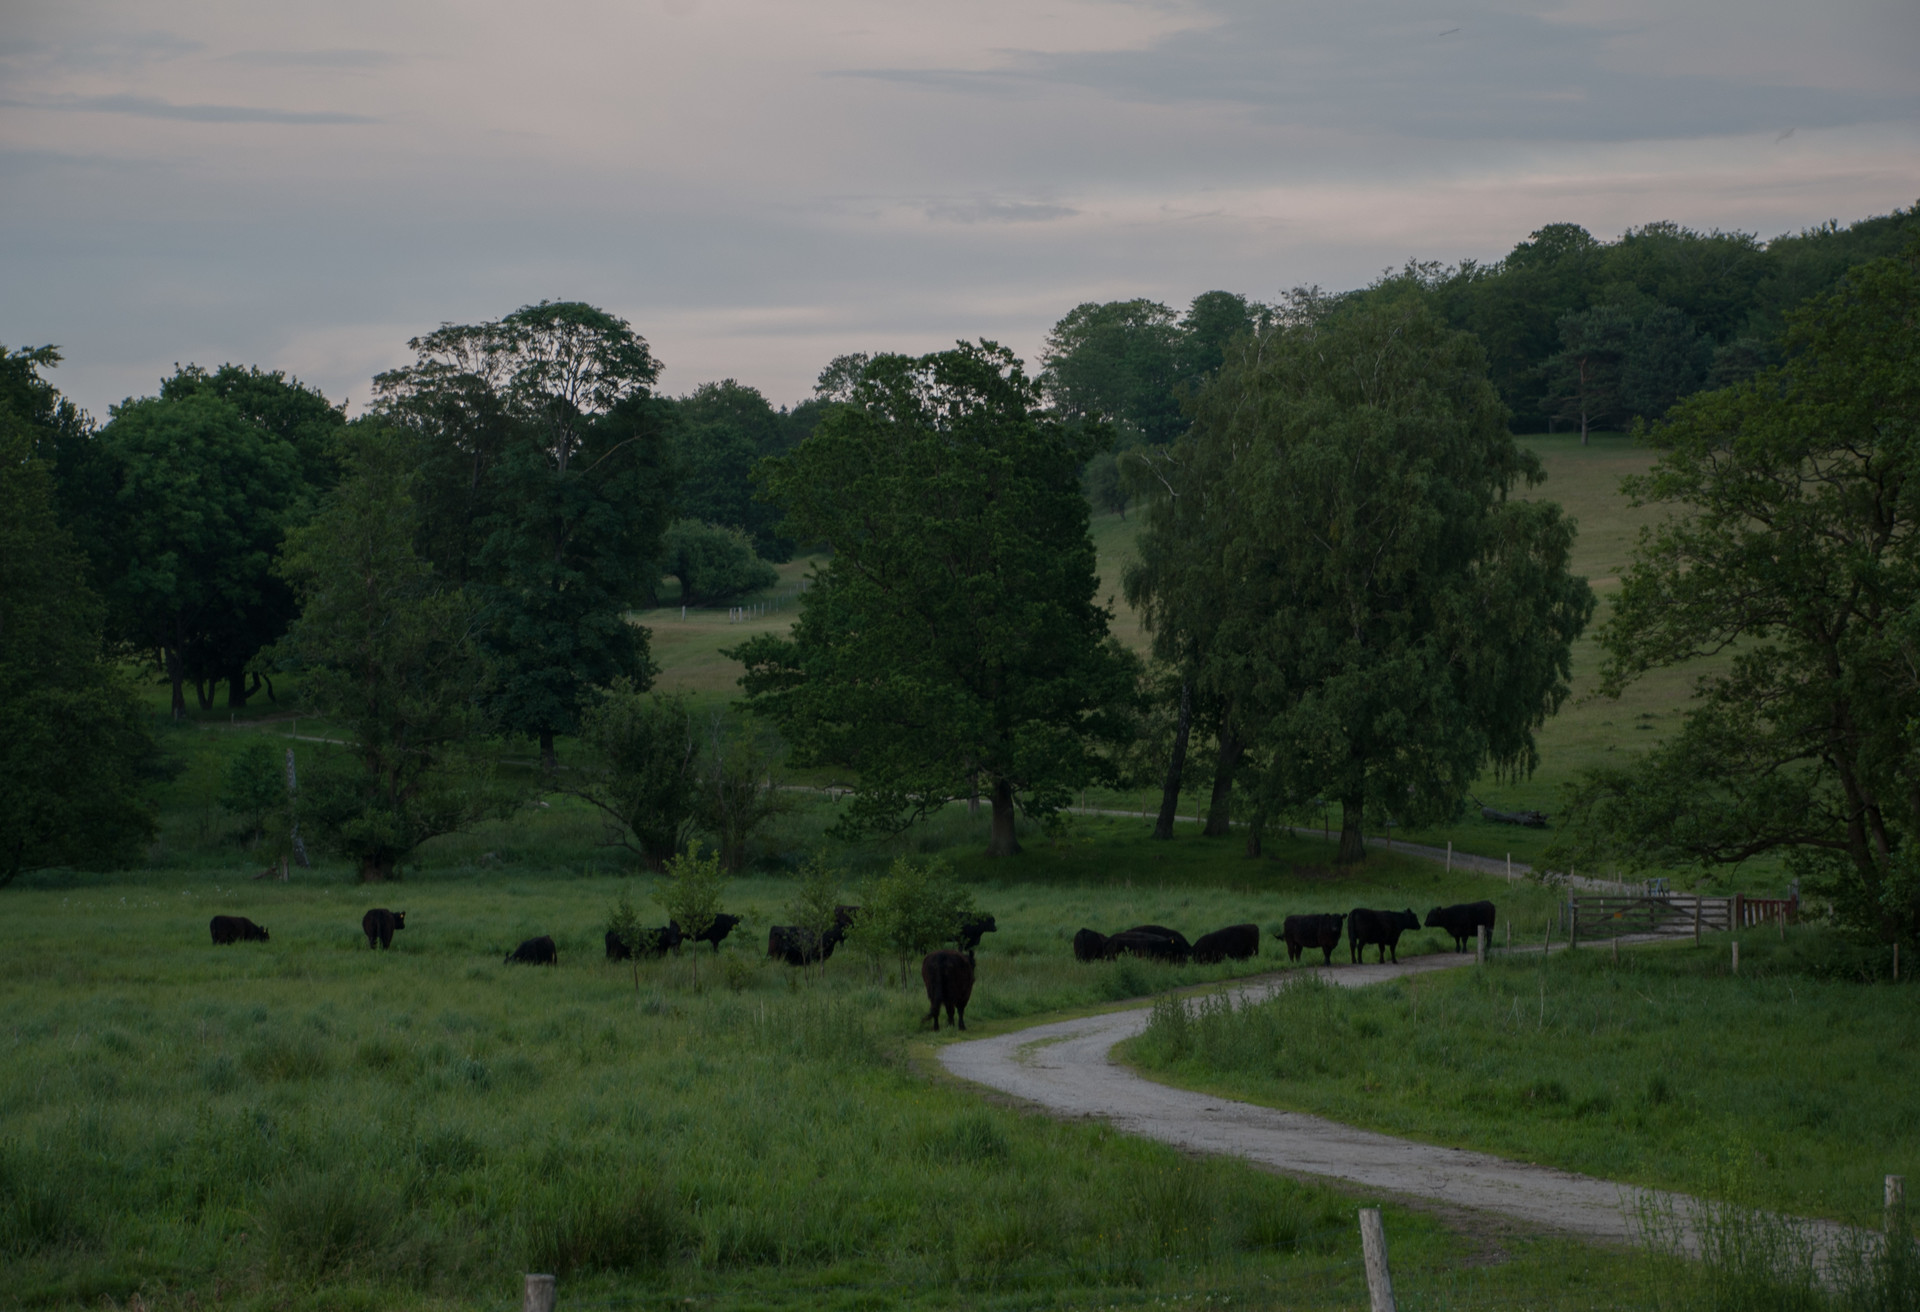 Grasing cattles on Fuenen in Denmark